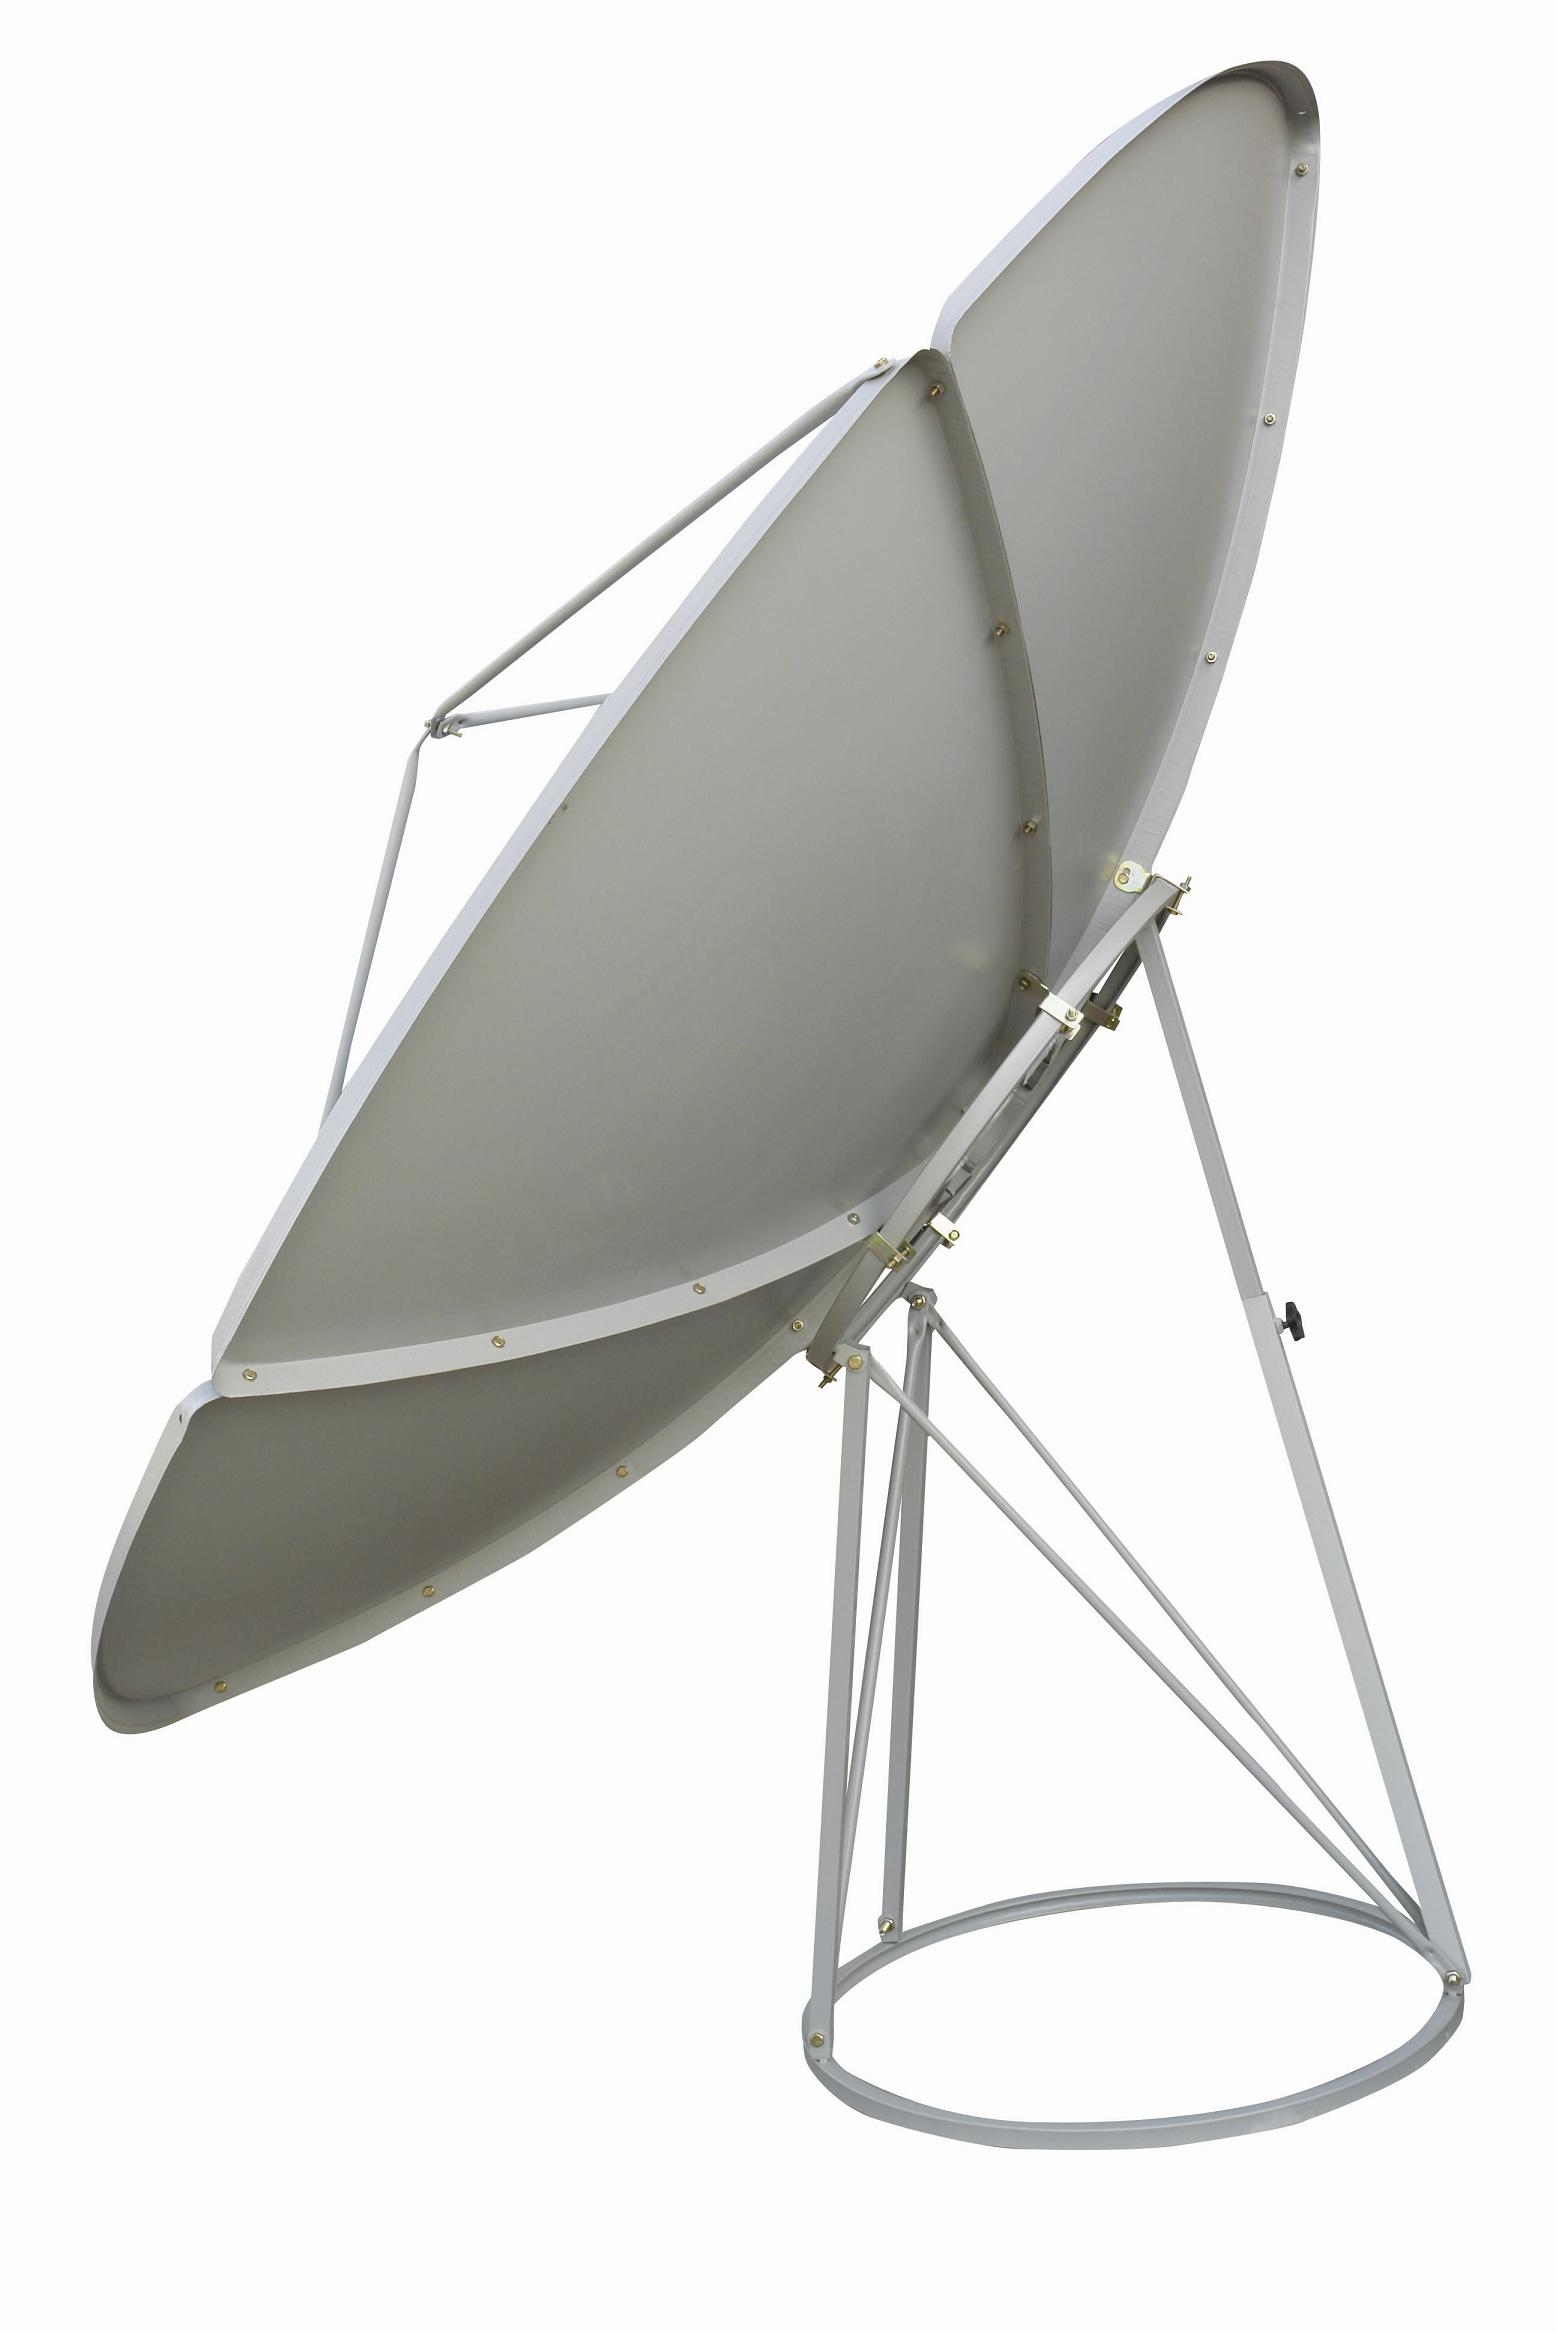 vehicle satellite antenna,Buying vehicle satellite antenna, Select ...